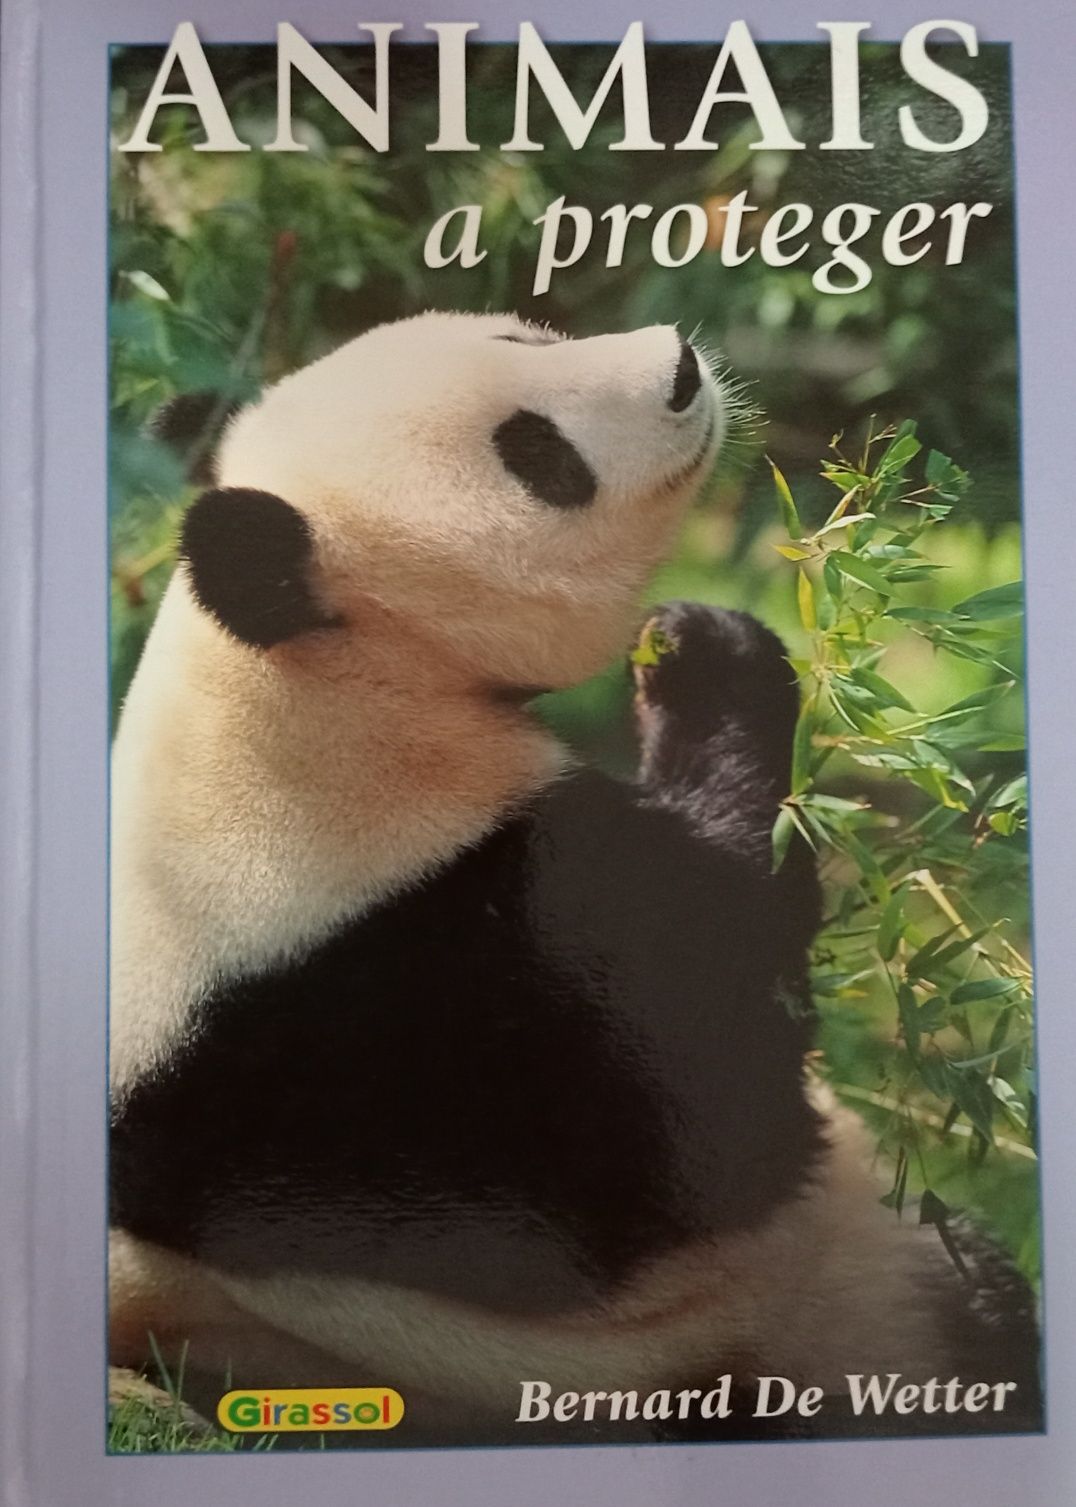 Livro "Animais a proteger"